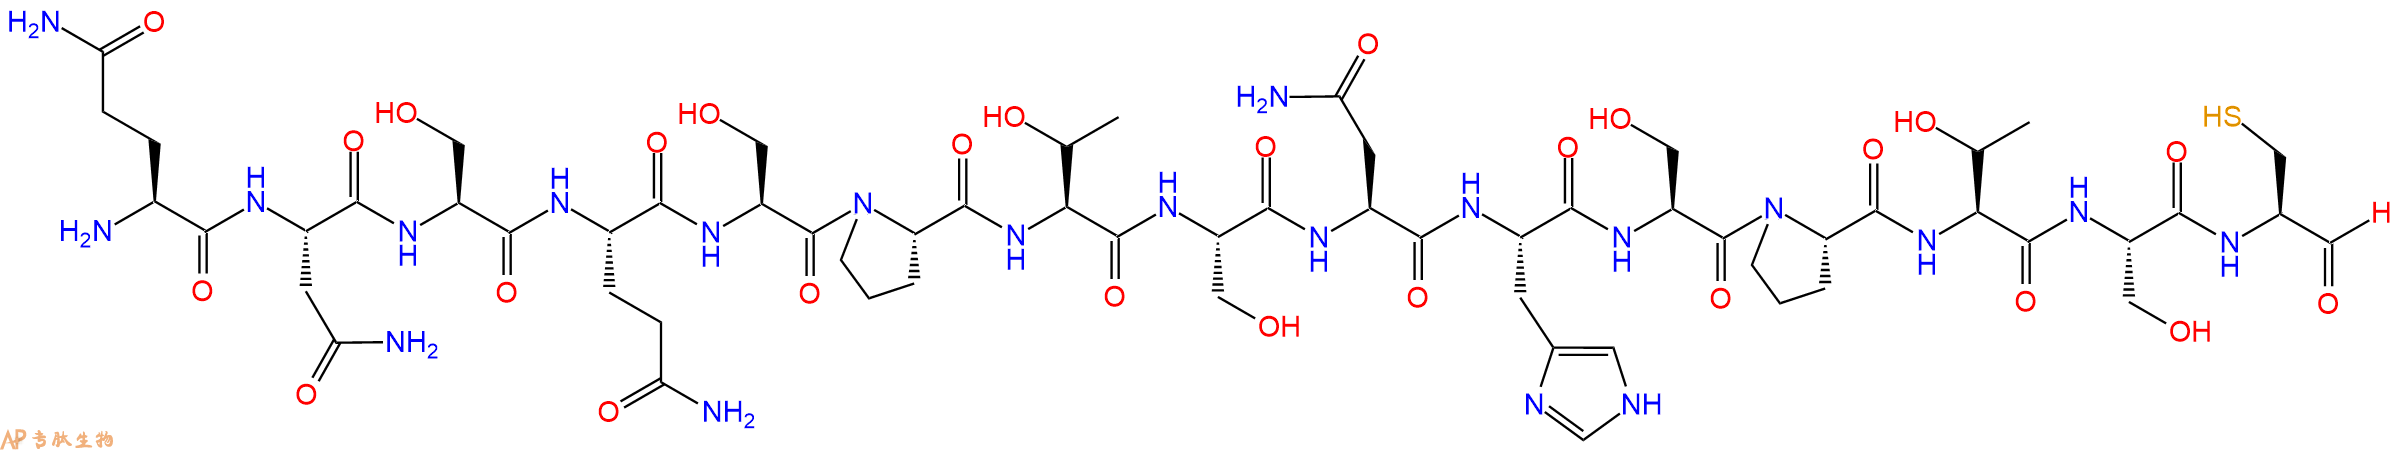 专肽生物产品H2N-Gln-Asn-Ser-Gln-Ser-Pro-Thr-Ser-Asn-His-Ser-Pr